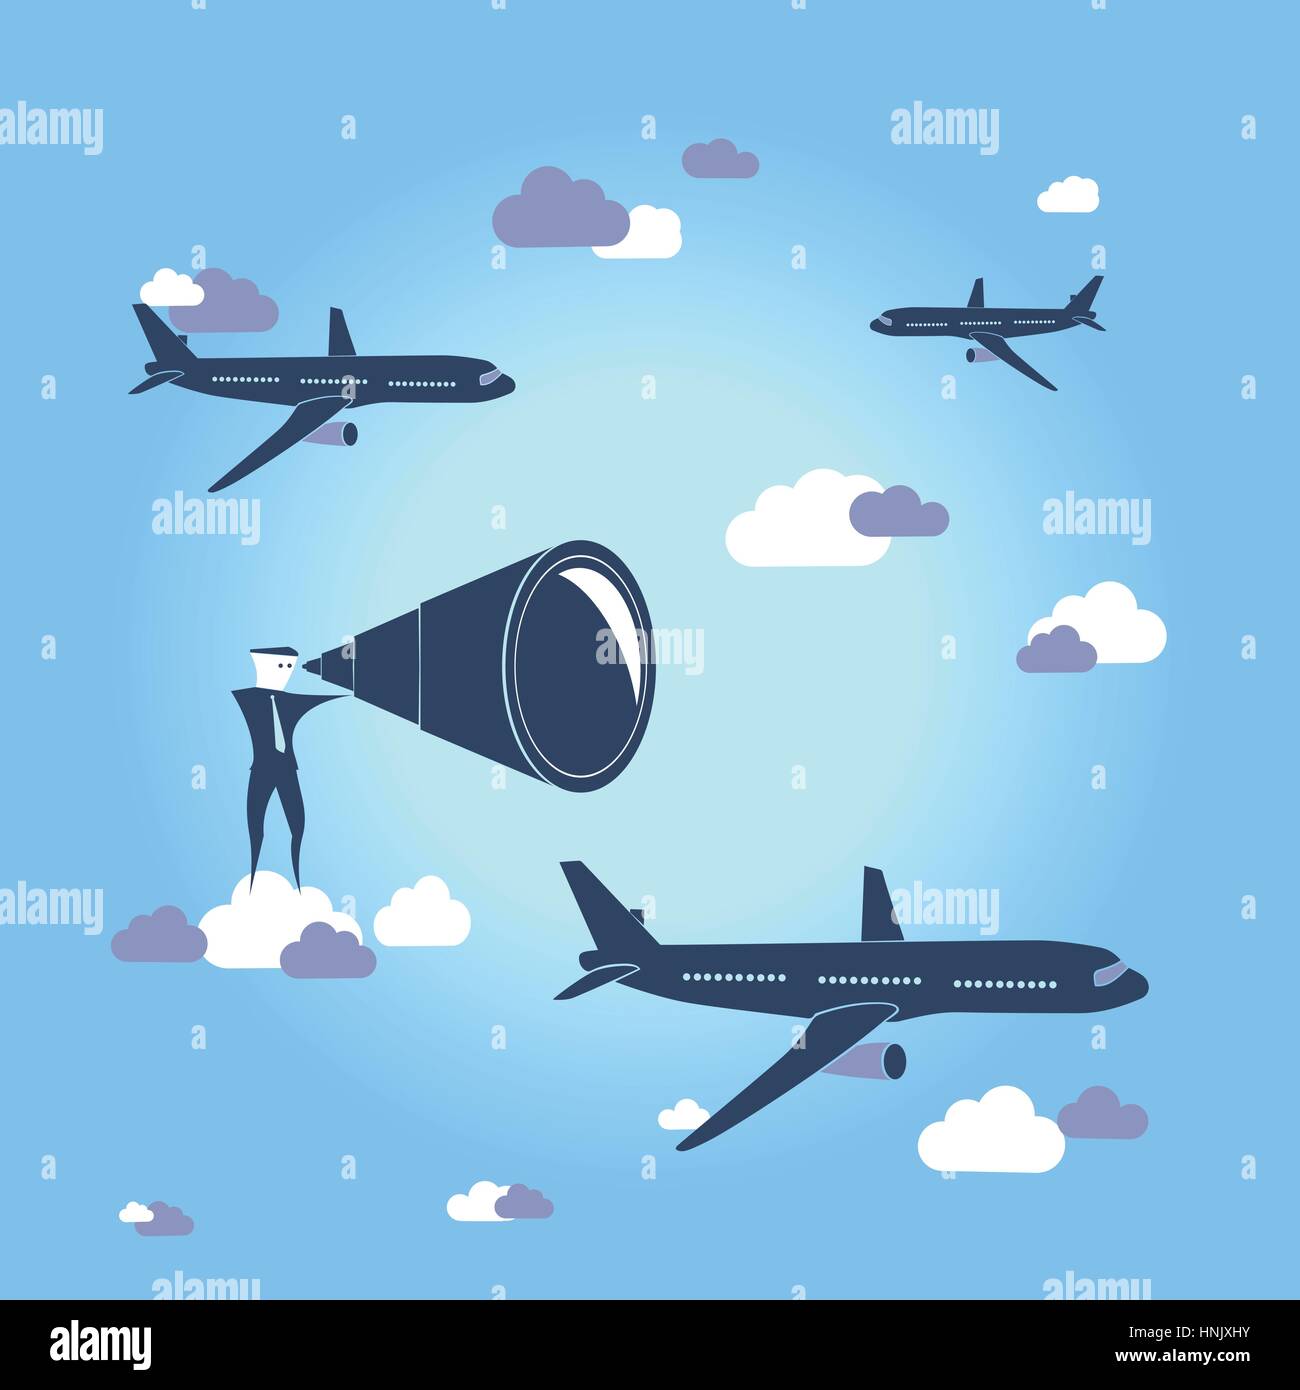 World Travel / destination recherche. Creative image vectorielle avec avion en l'air au-dessus de la Terre. Illustration de Vecteur